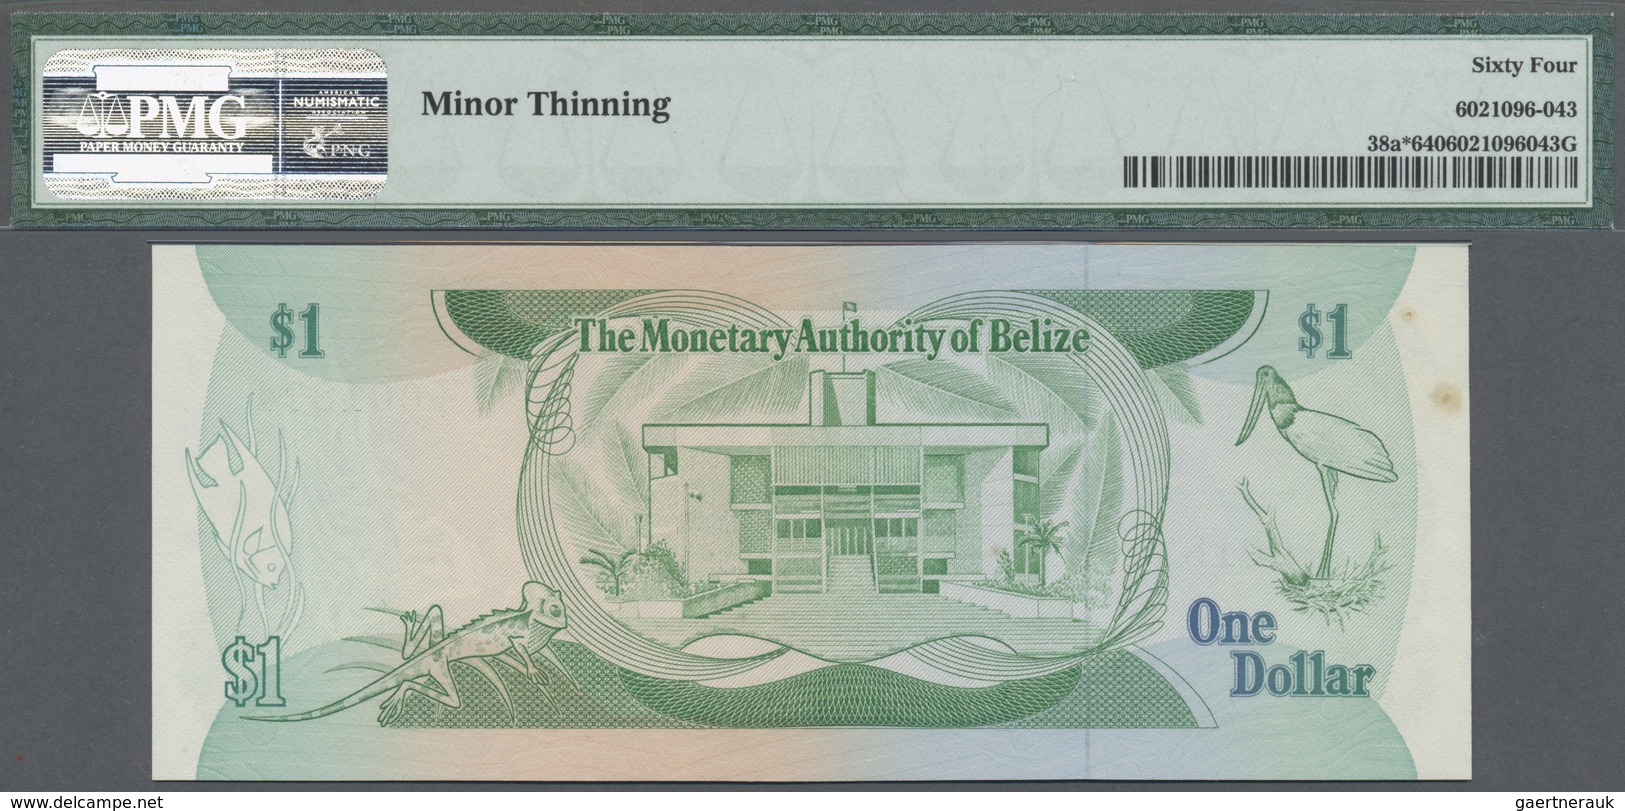 Belize: 1 Dollar 1980 Replacement Prefix Z/1 P. 38a*, Condition: PMG Graded 64 Choice UNC. - Belize